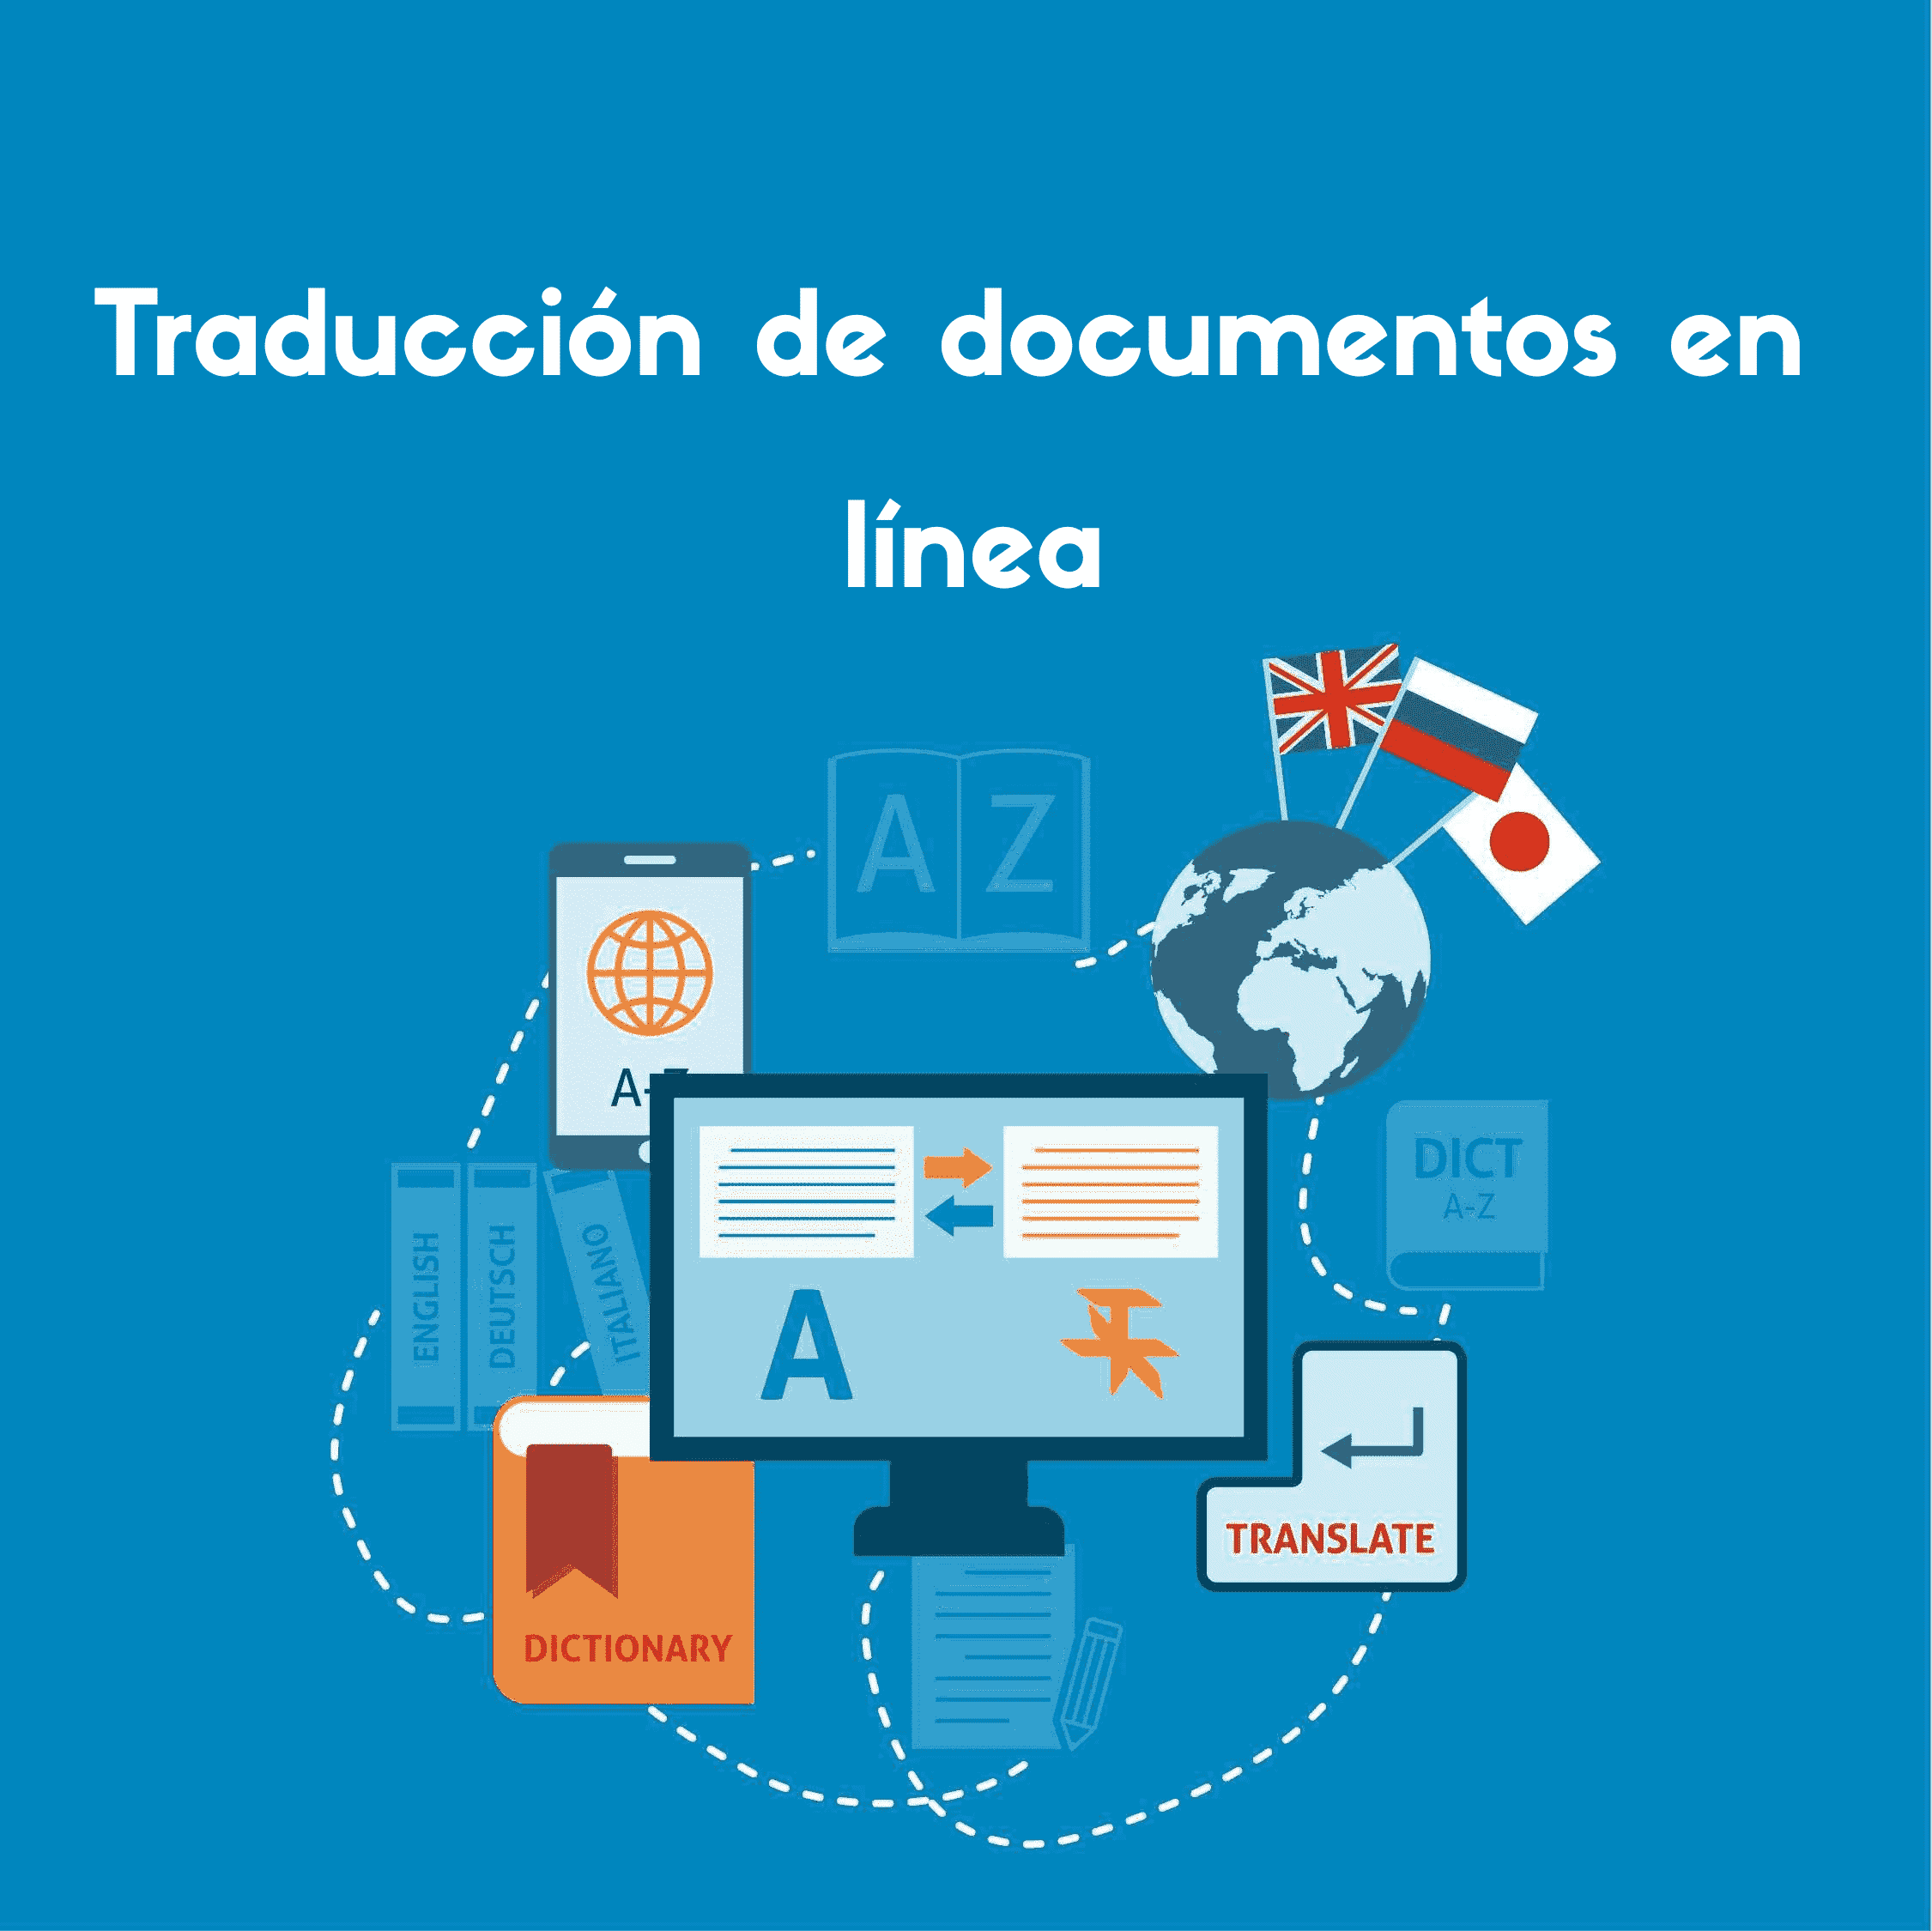 Esta imagen le da una idea de cómo funcionará la herramienta de traducción de documentos en línea para traducir su documento.